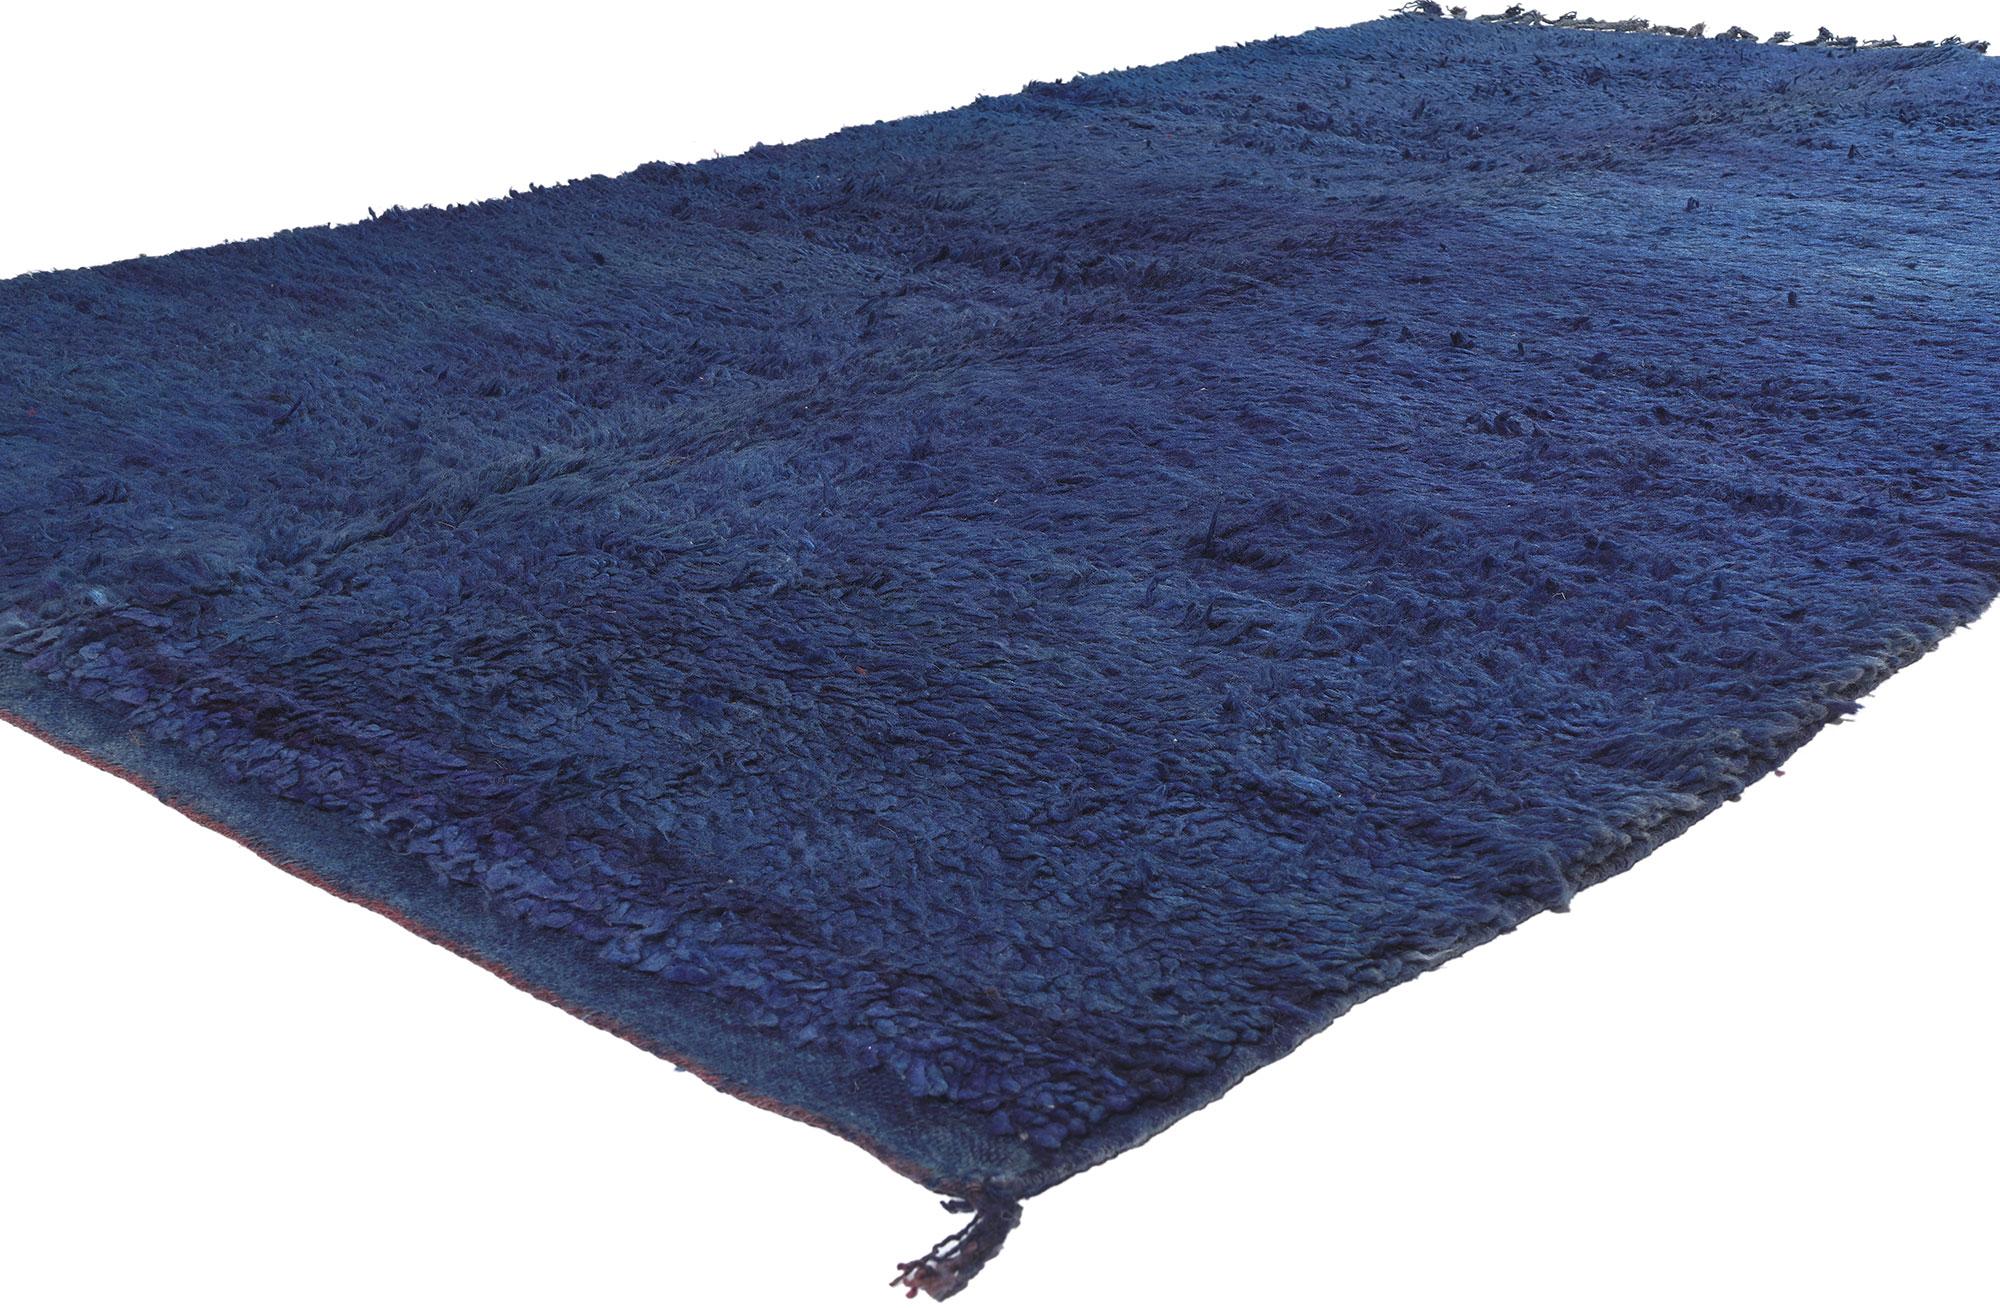 20645 Tapis marocain Beni MGuild bleu vintage, 05'10 x 10'04.

Dans le domaine enchanteur de l'esthétique Shibui, découvrez l'attrait de ce tapis marocain Beni Rugs vintage en laine nouée à la main - un chef-d'œuvre du Moyen Atlas central